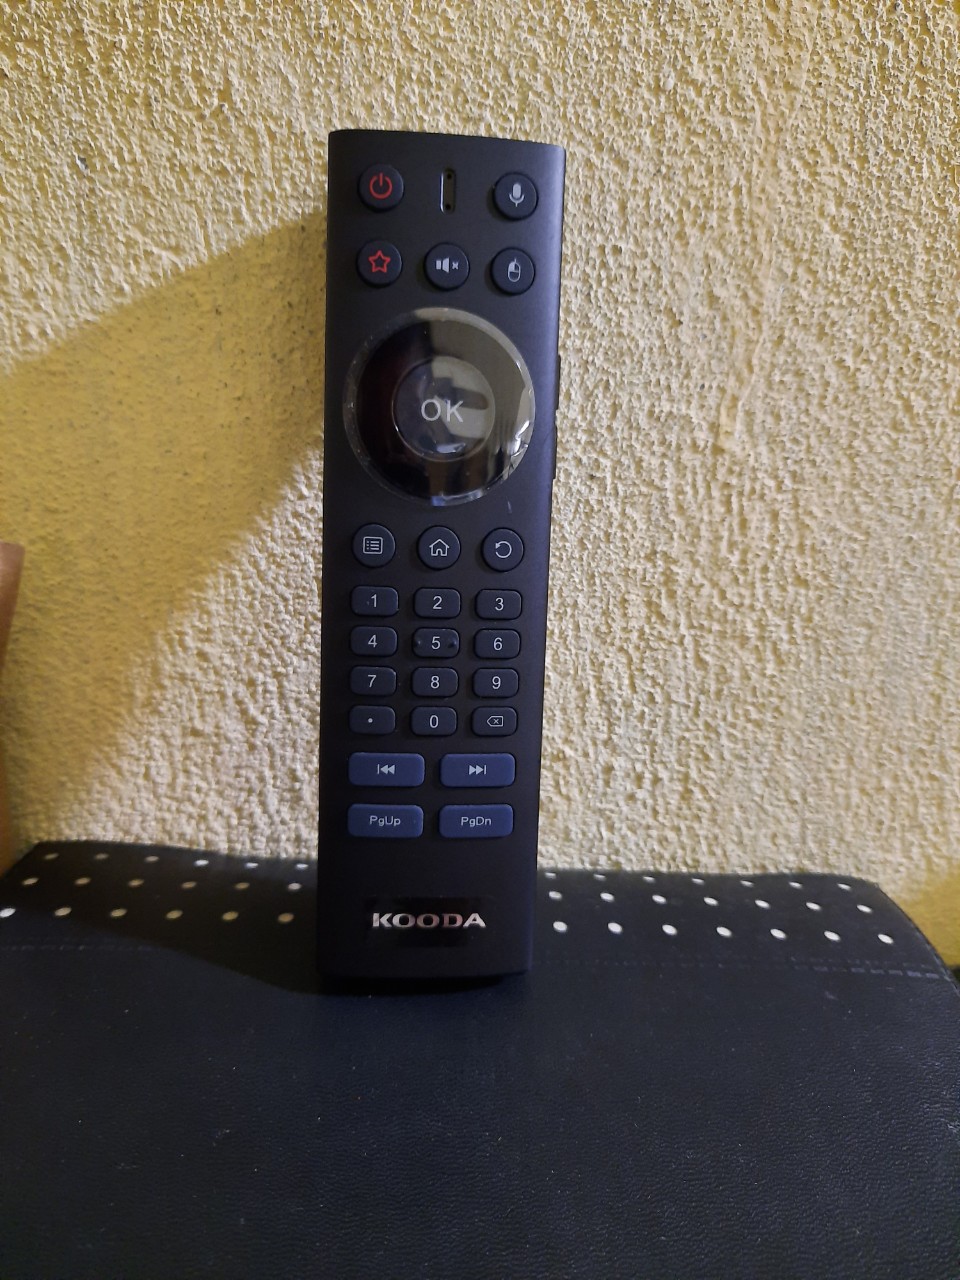 Remote Điều khiển tivi Kooda giọng nói kiêm chuột bay- Hàng mới theo TV mới 100% Tặng kèm Pin